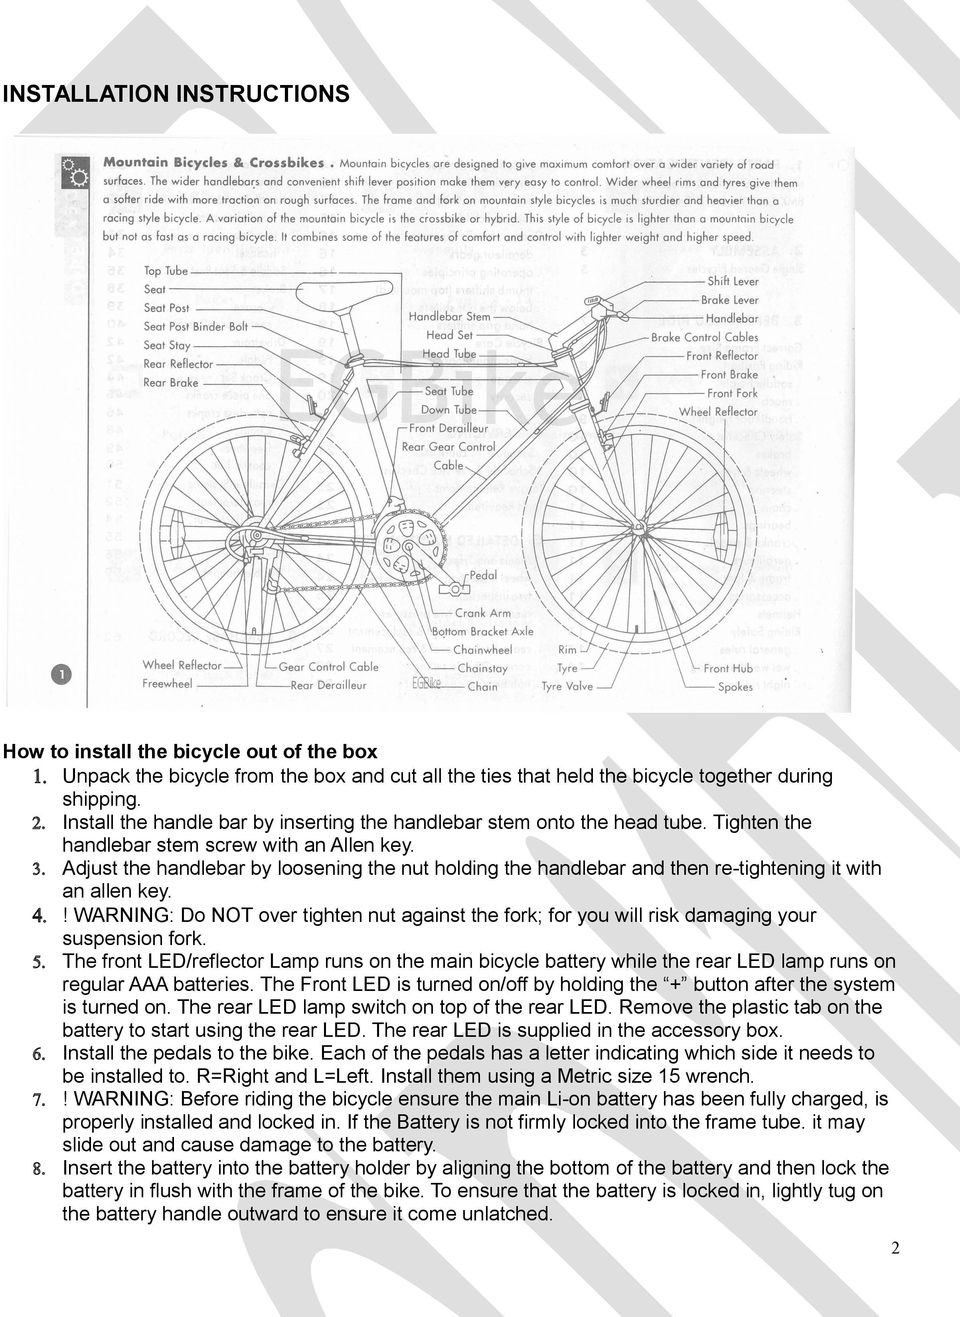 Daymak paris 36v electric bicycle manual